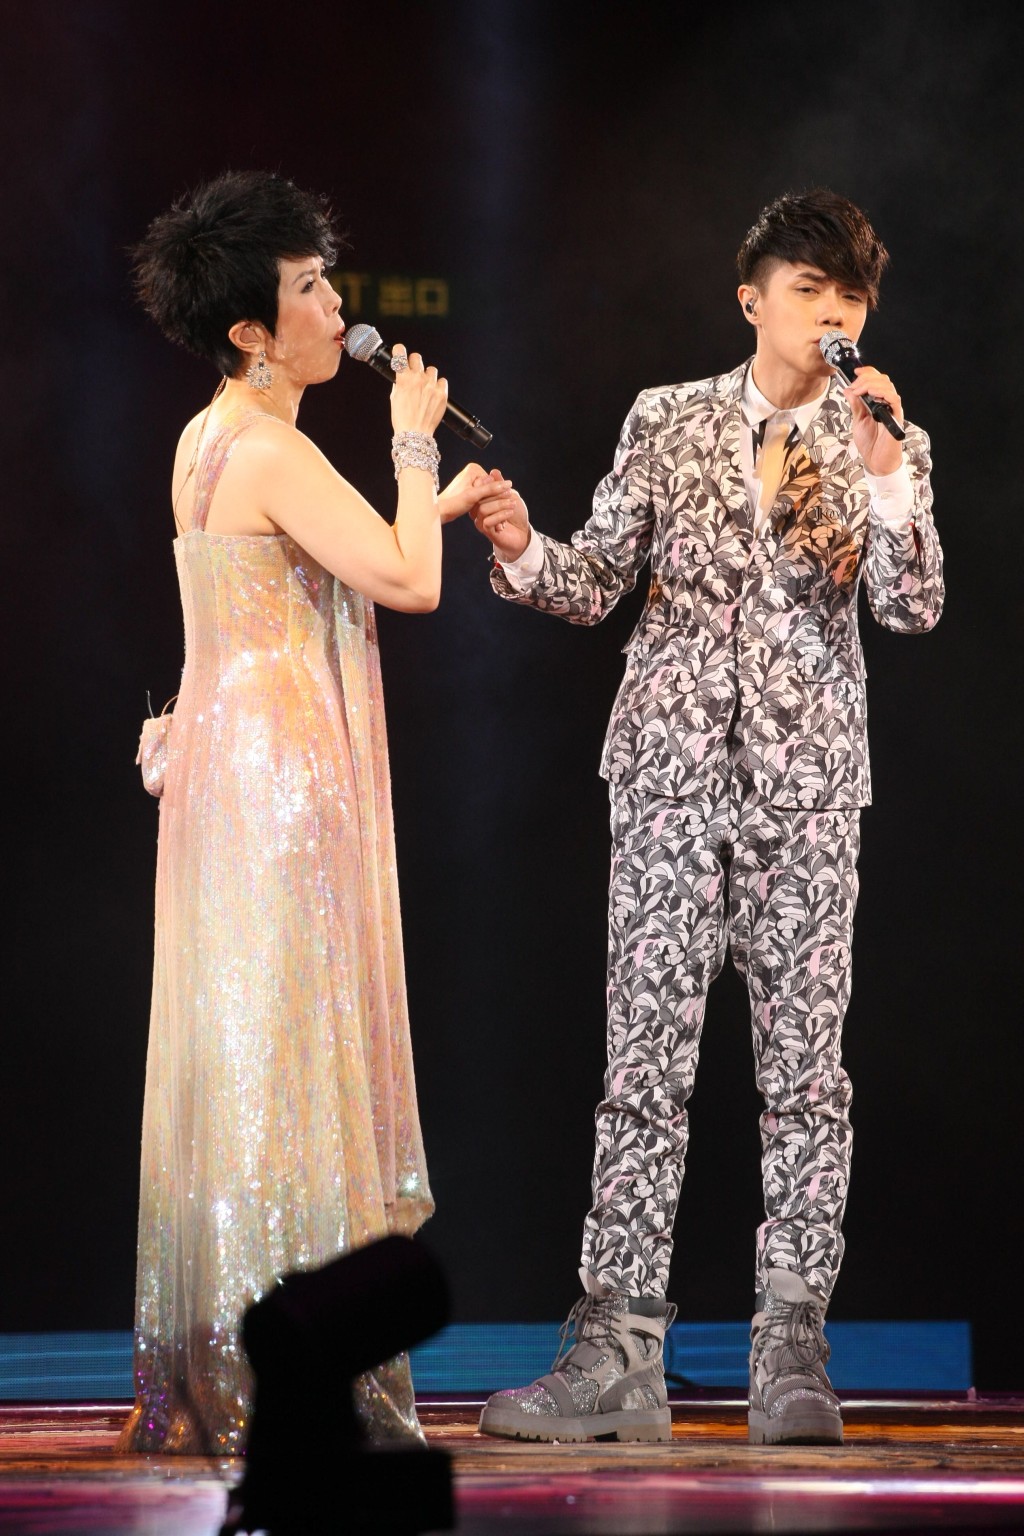 張敬軒與關菊英兩代歌手攜手合唱。